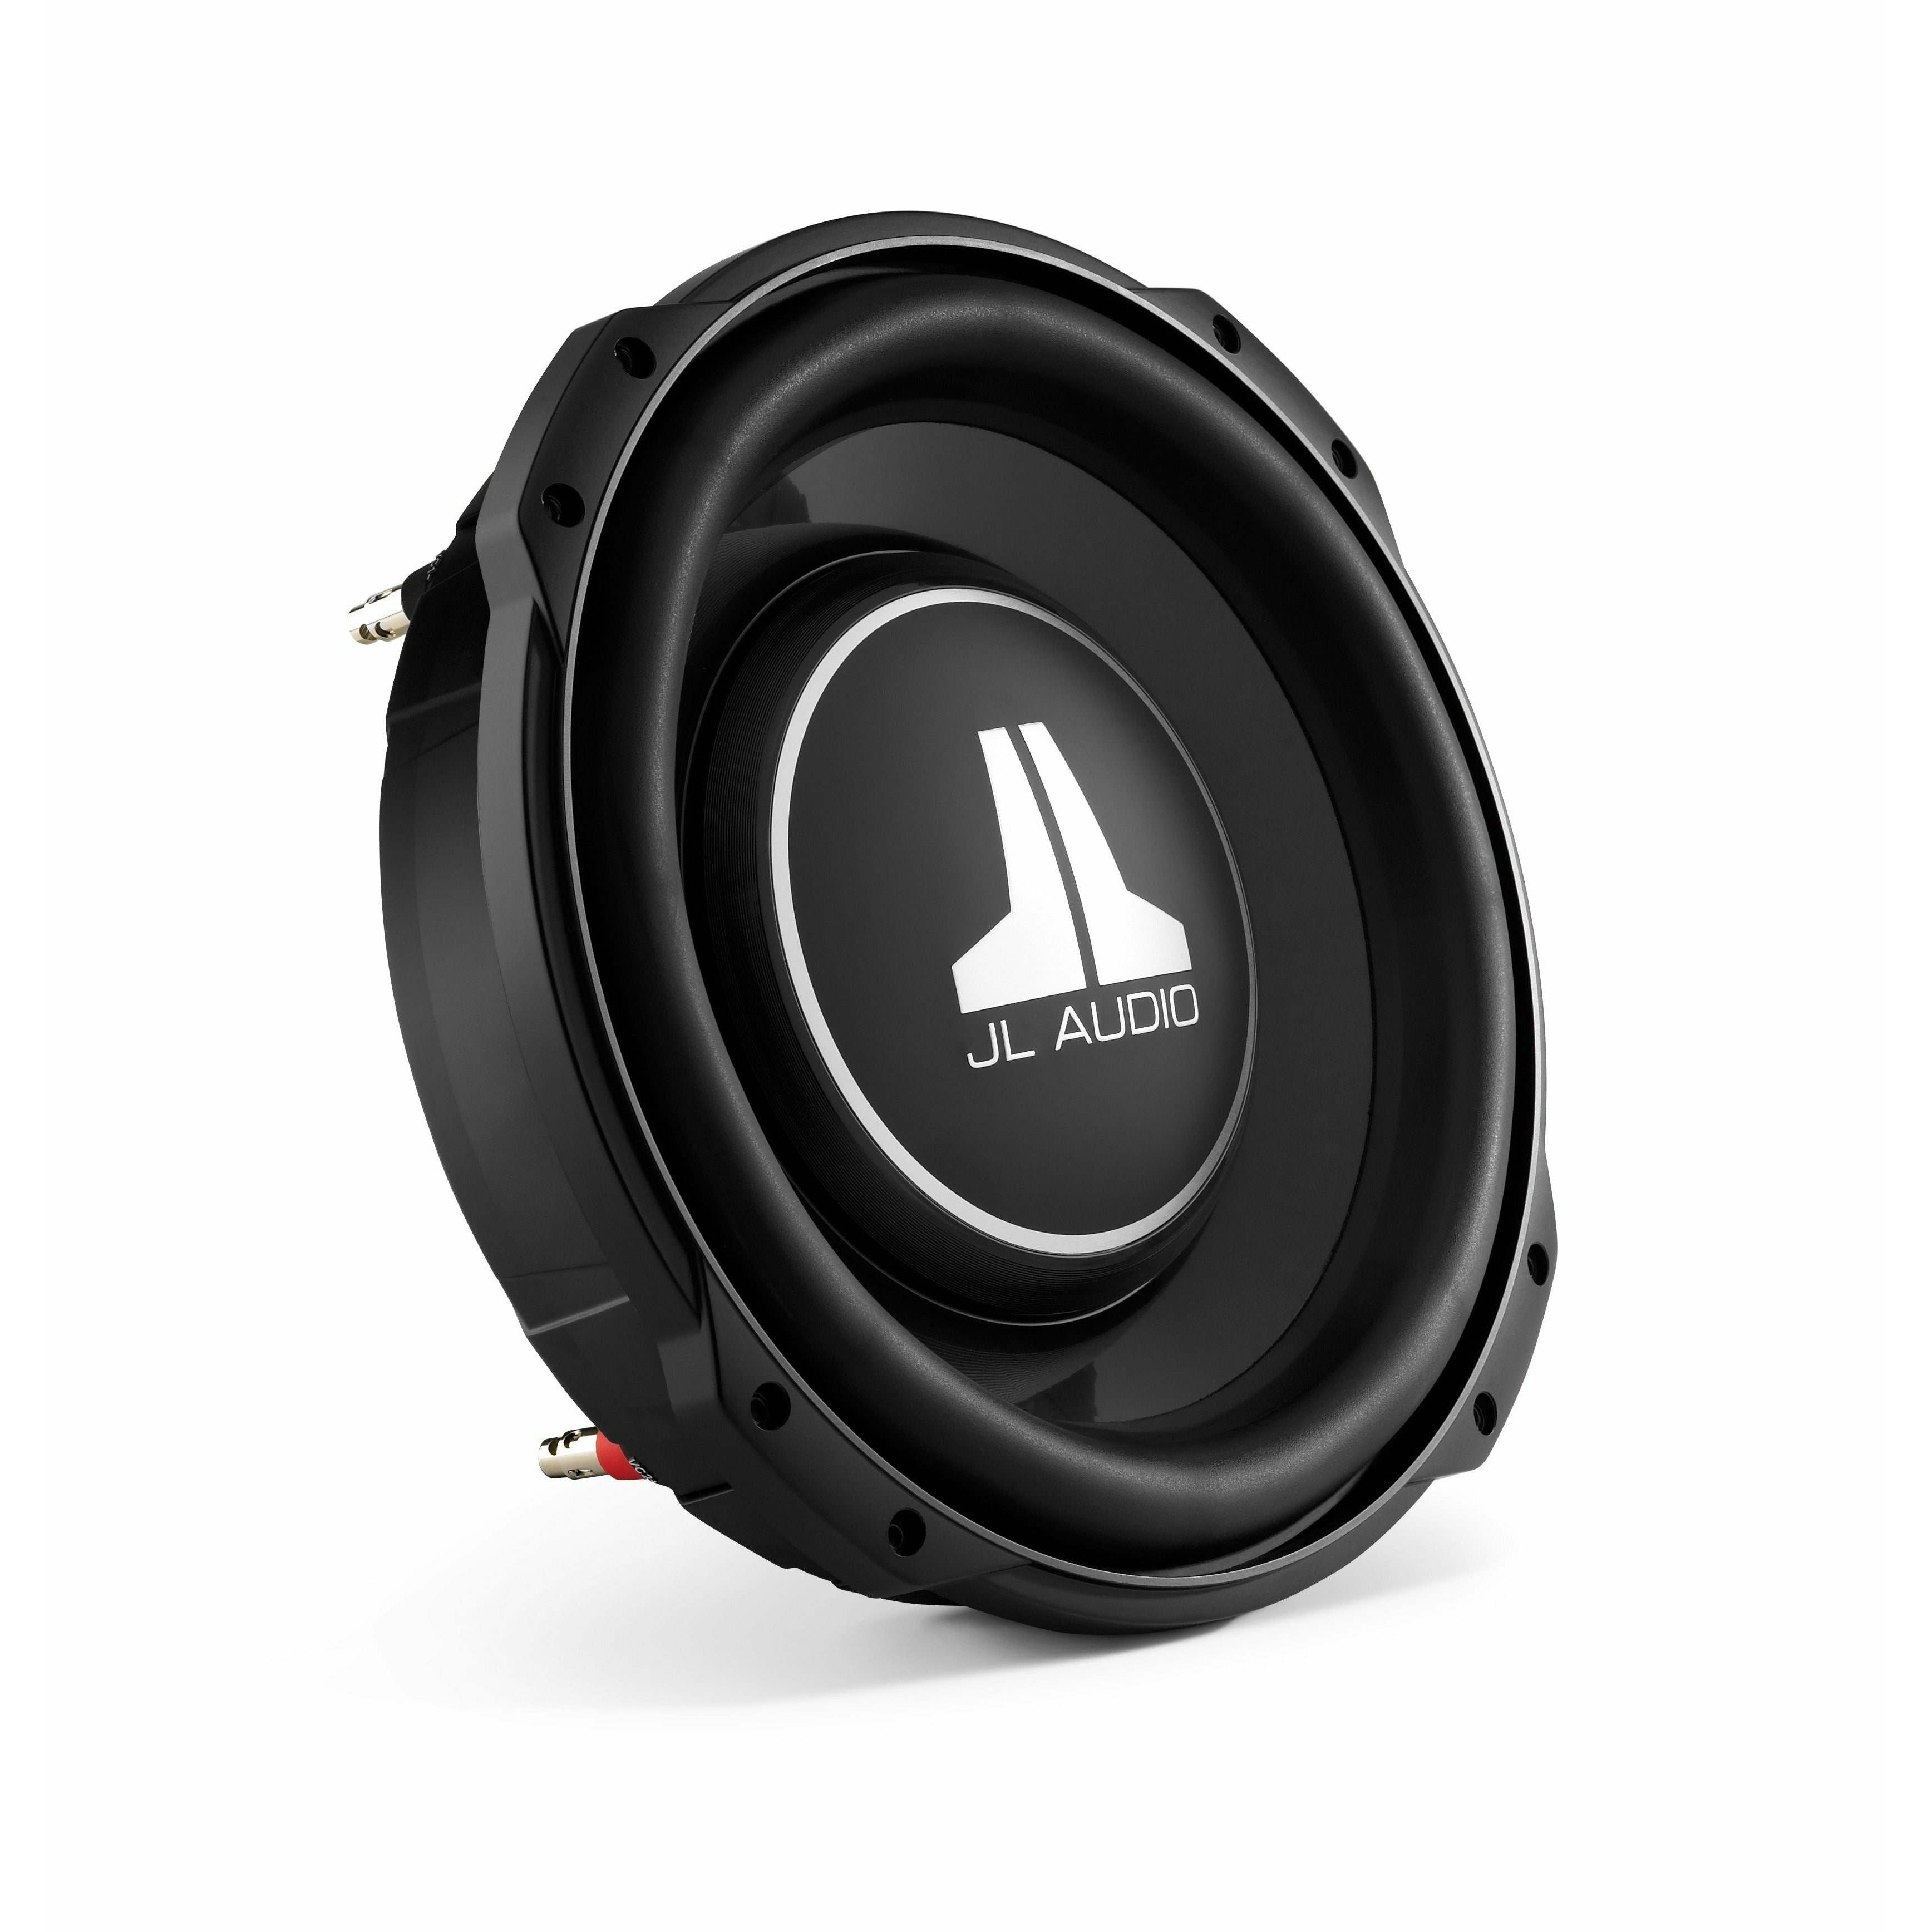 JL Audio 10TW3-D4 10-inch Sub (400 W, dual 4 Ω voice coils)